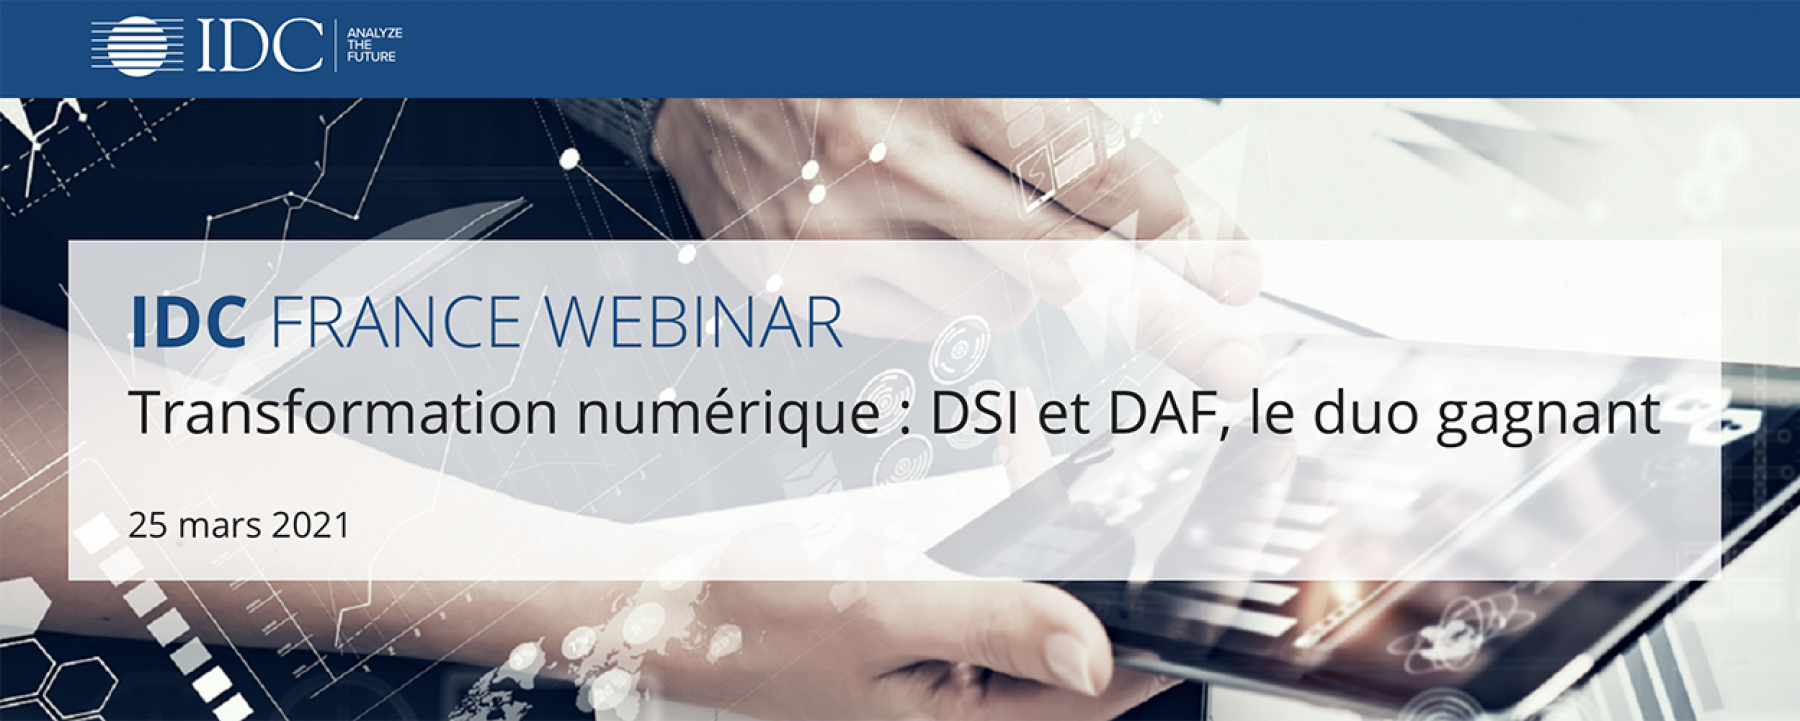 Transformation numérique : DSI et DAF, le duo gagnant, un webinar organisé par IDC France le 25 mars